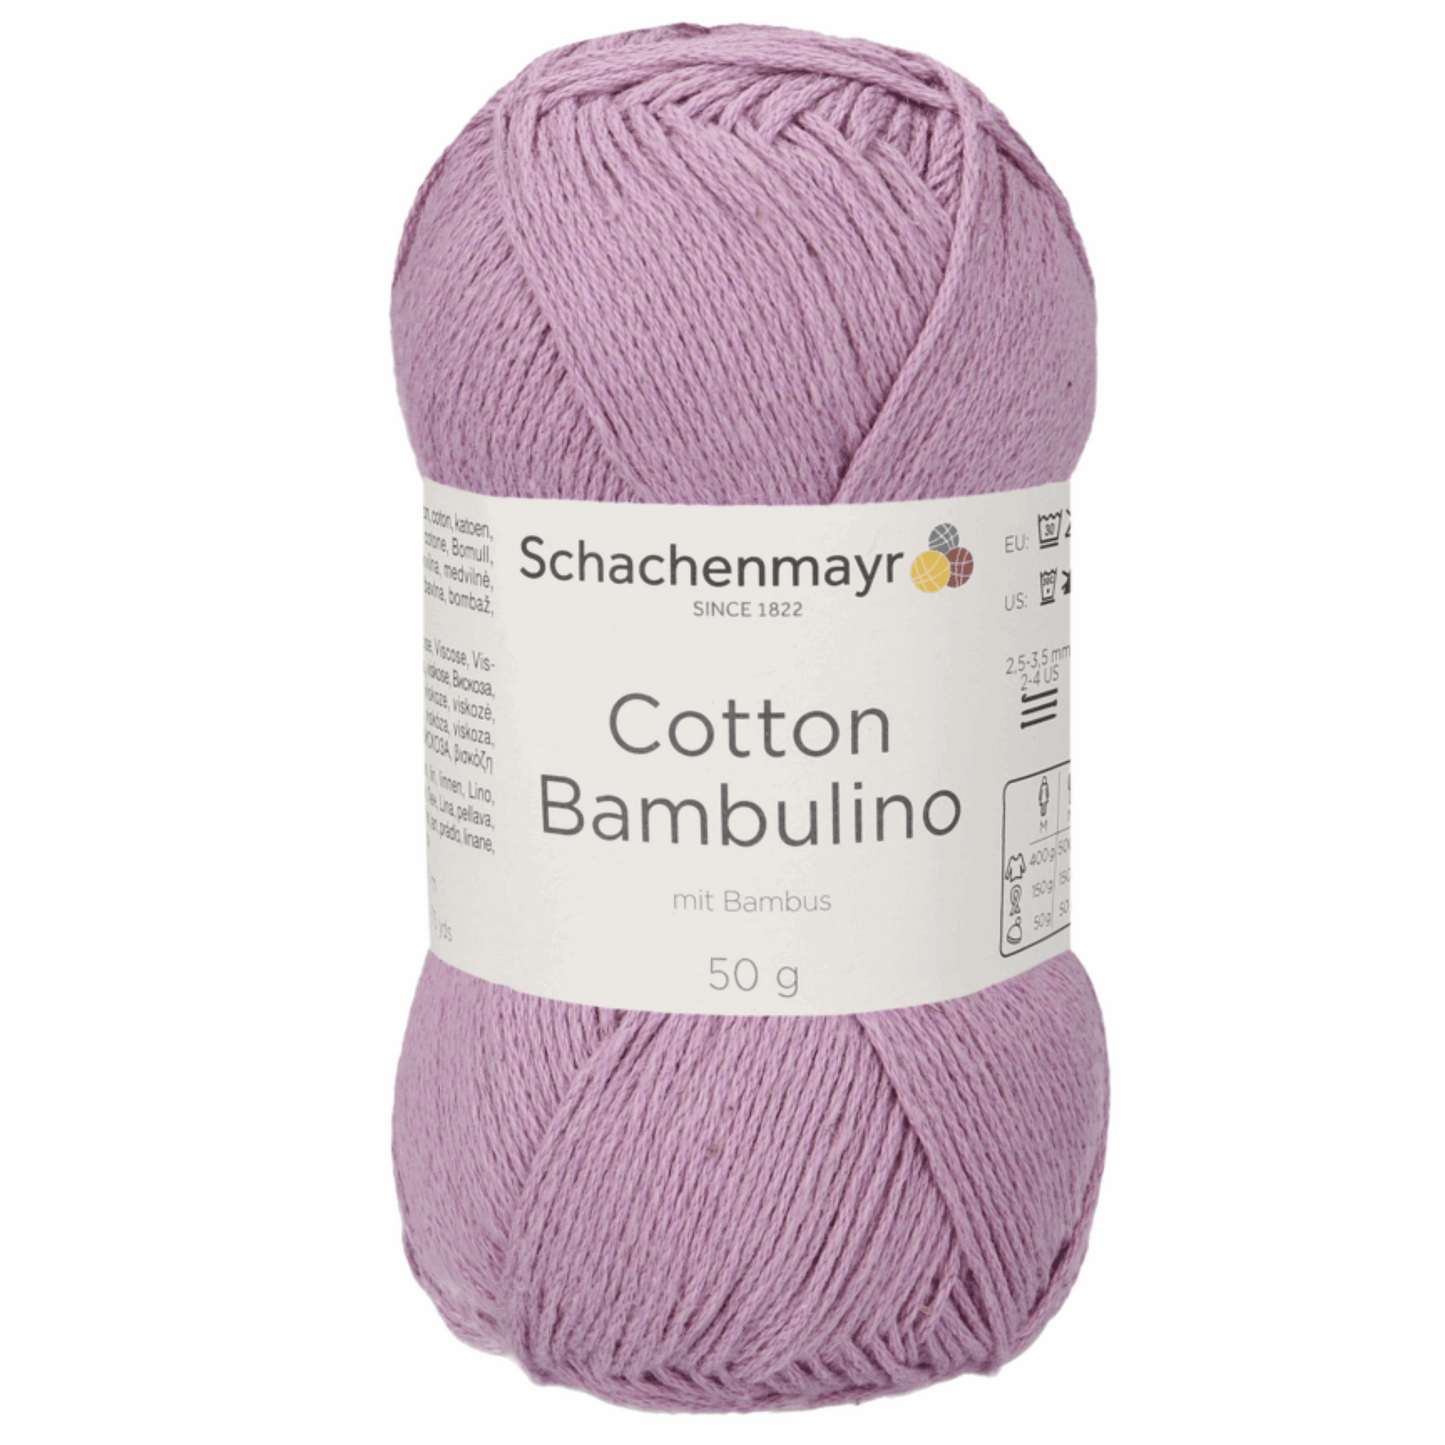 Schachenmayr Cotton Bambulino 50g, 90403, Farbe Flieder 47